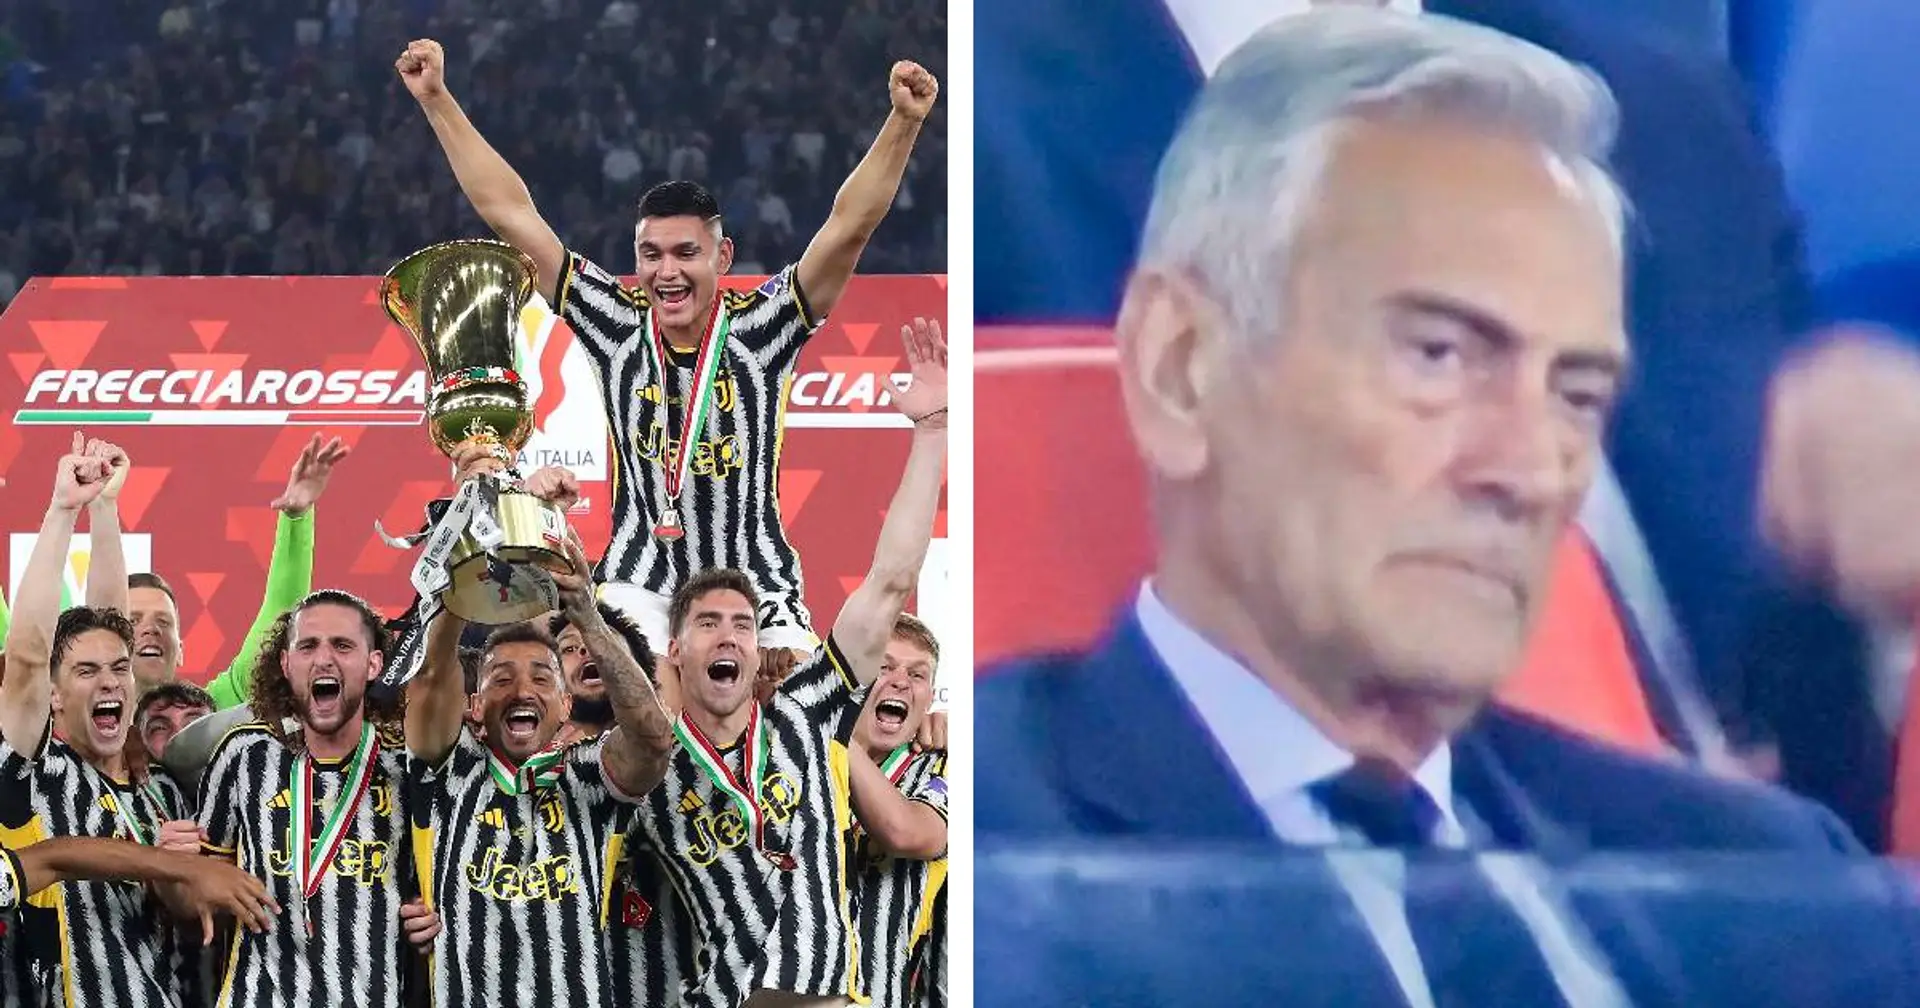 'Gravina un uomo distrutto, alla faccia tua! 🤡': i tifosi della Juve gongolano dopo la conquista della Coppa Italia